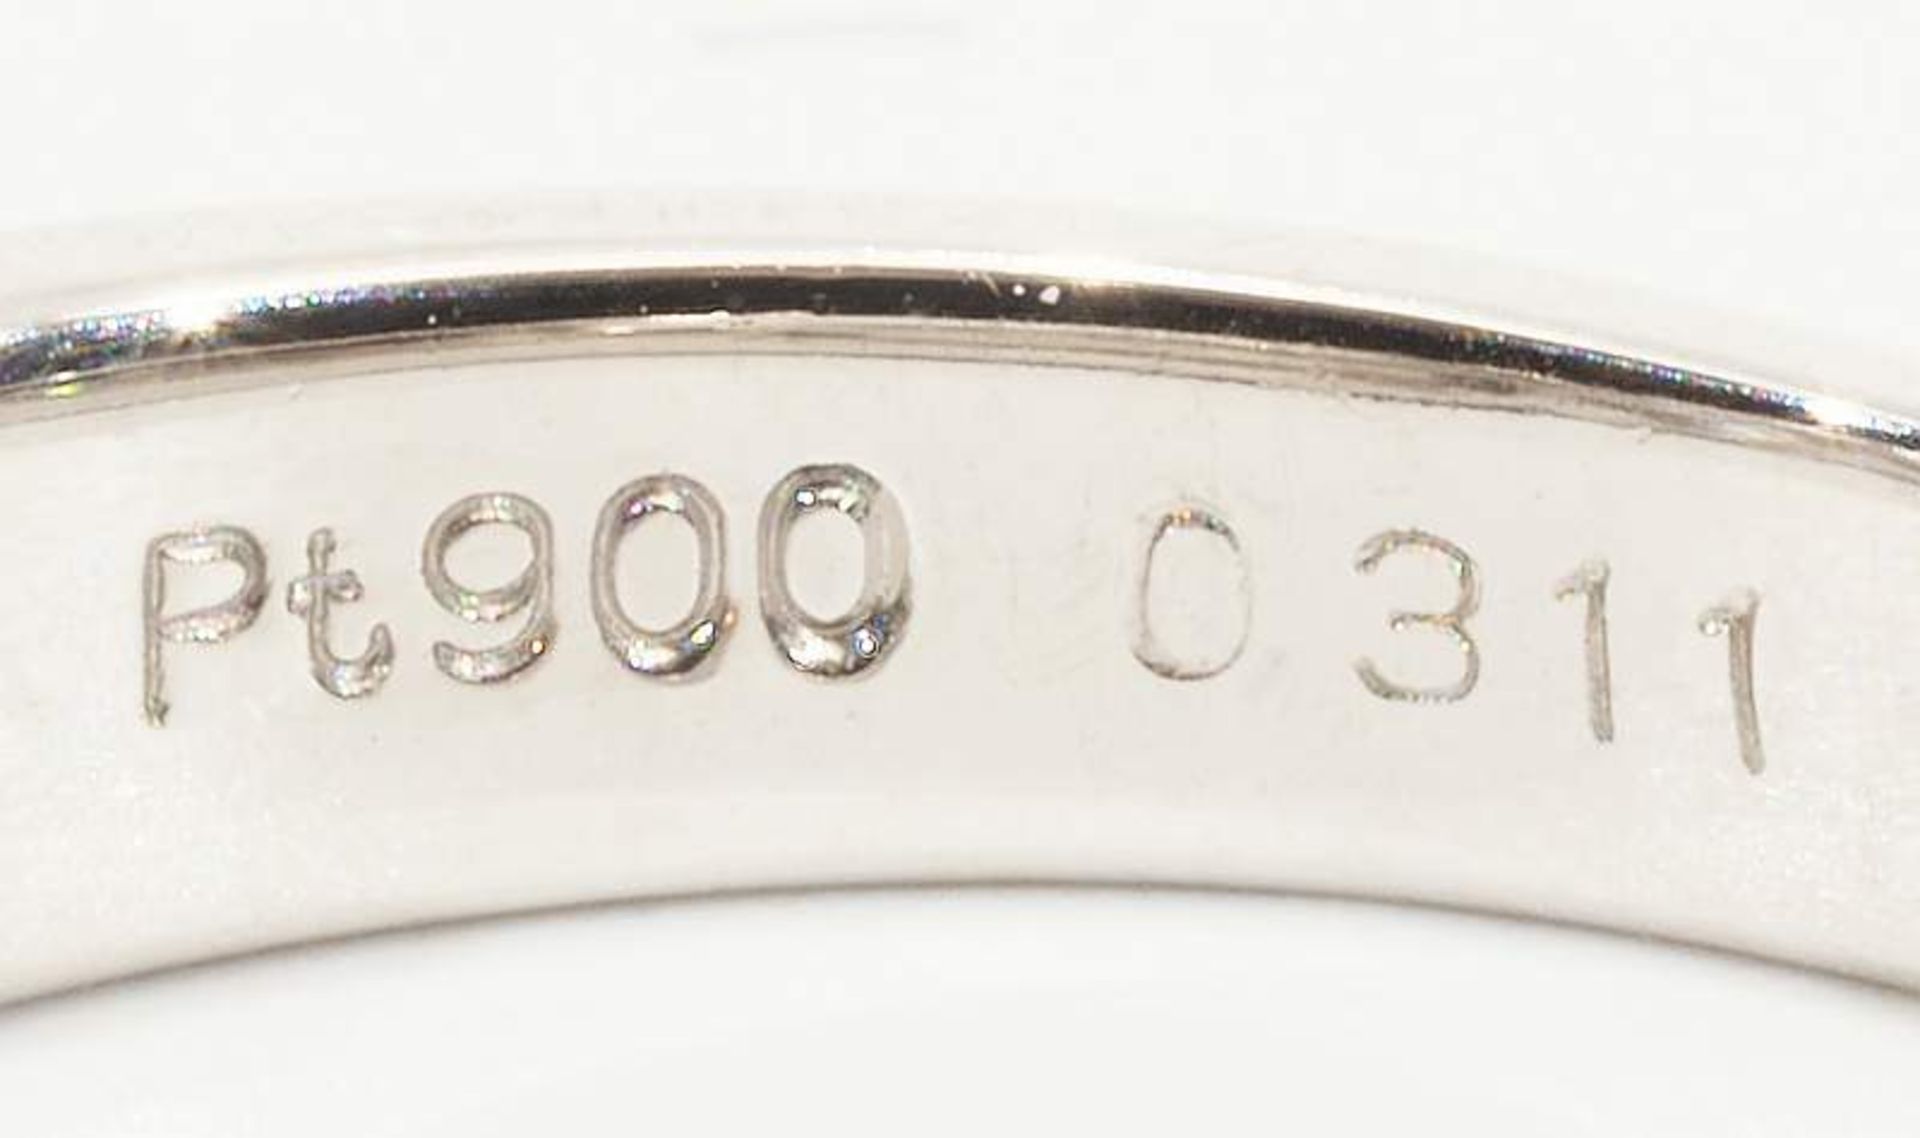 Ring, 900 Platin, besetzt mit 1 Brillant von 0,31 ct. (in der Ringschiene punziert). Ringgröße 52 - Bild 5 aus 6